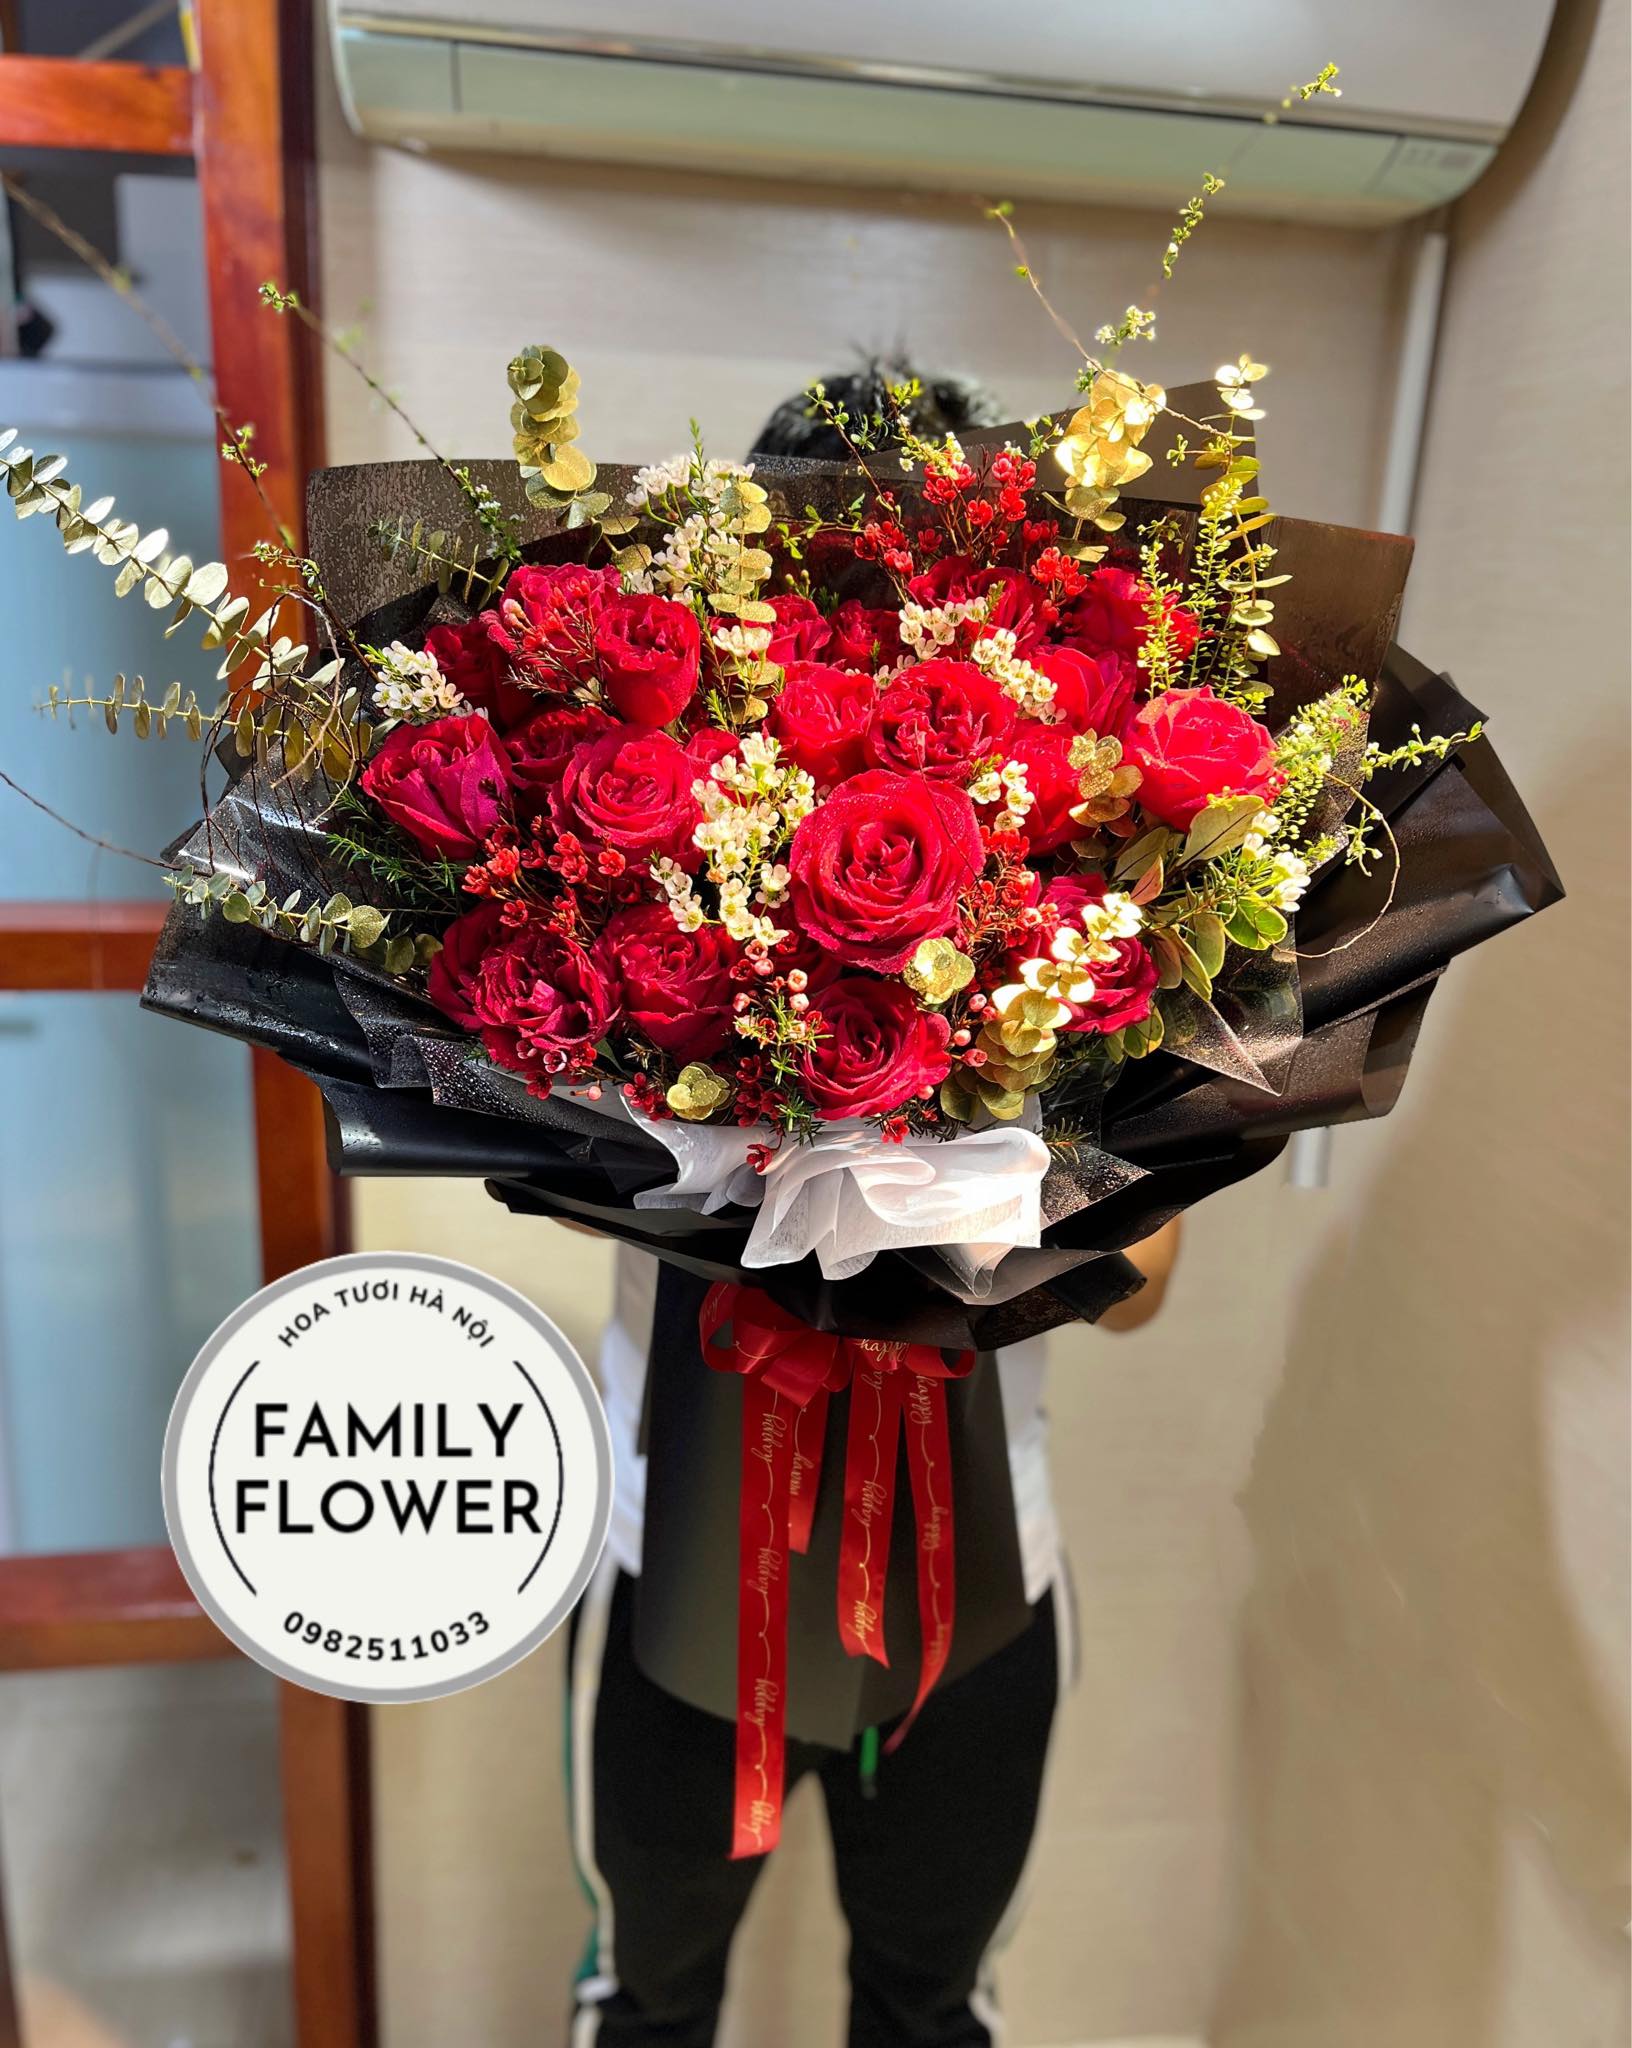 Bó hoa hồng đỏ tặng ngươi yêu nhân dịp 8 tháng 3 ở quận Ba Đình Hà Nội ! Hoa 8tháng 3